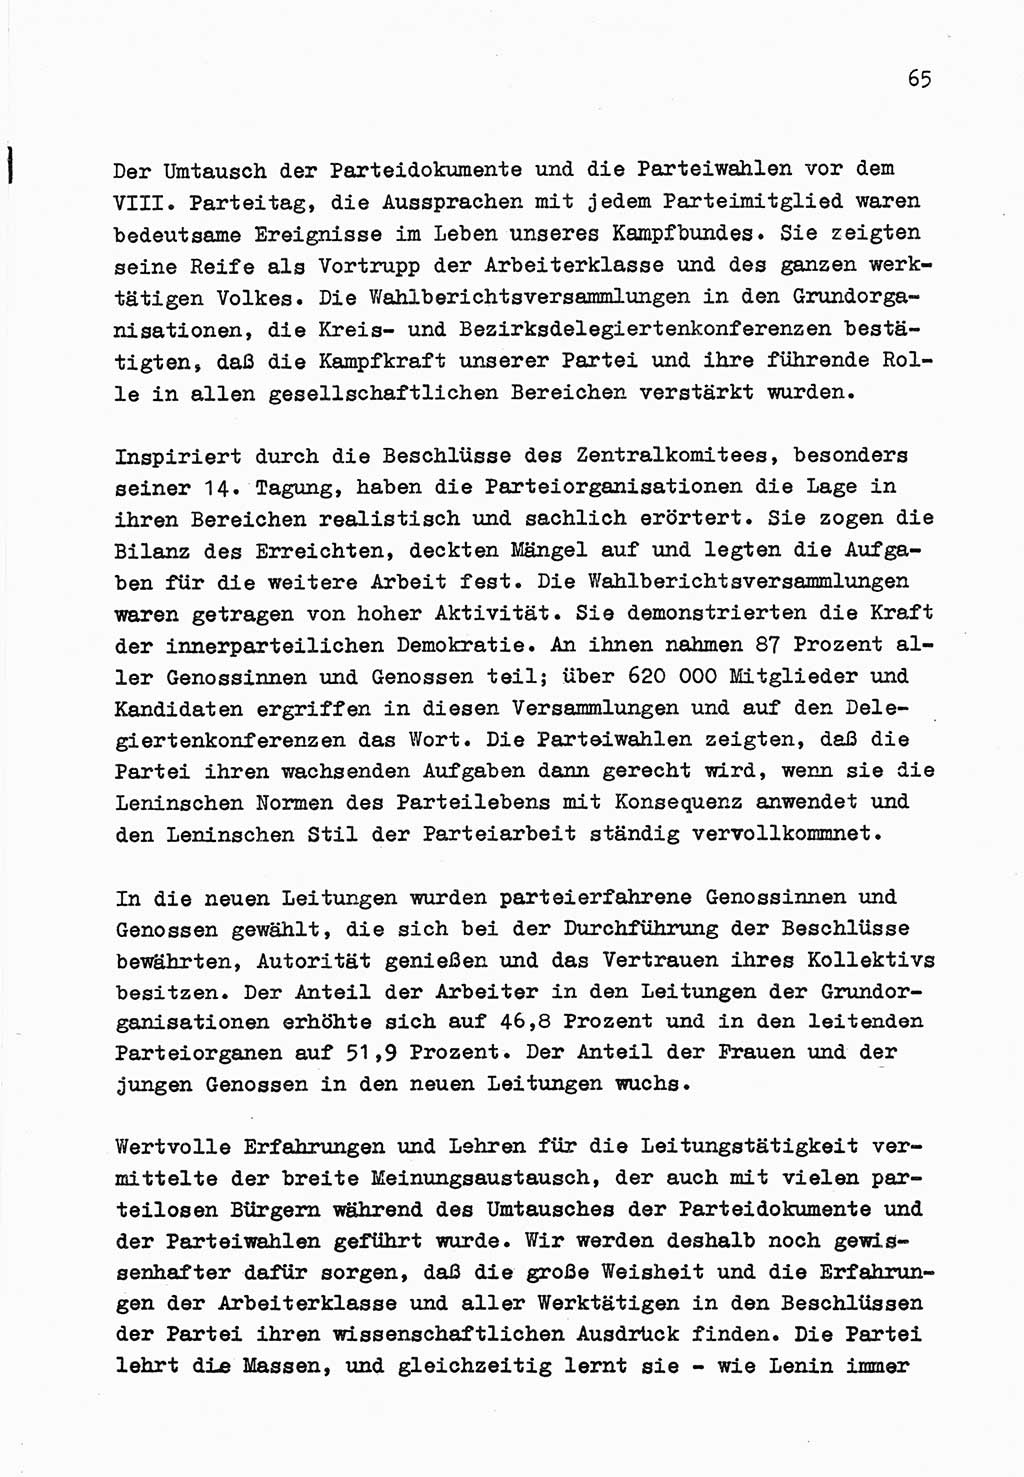 Zu Fragen der Parteiarbeit [Sozialistische Einheitspartei Deutschlands (SED) Deutsche Demokratische Republik (DDR)] 1979, Seite 65 (Fr. PA SED DDR 1979, S. 65)